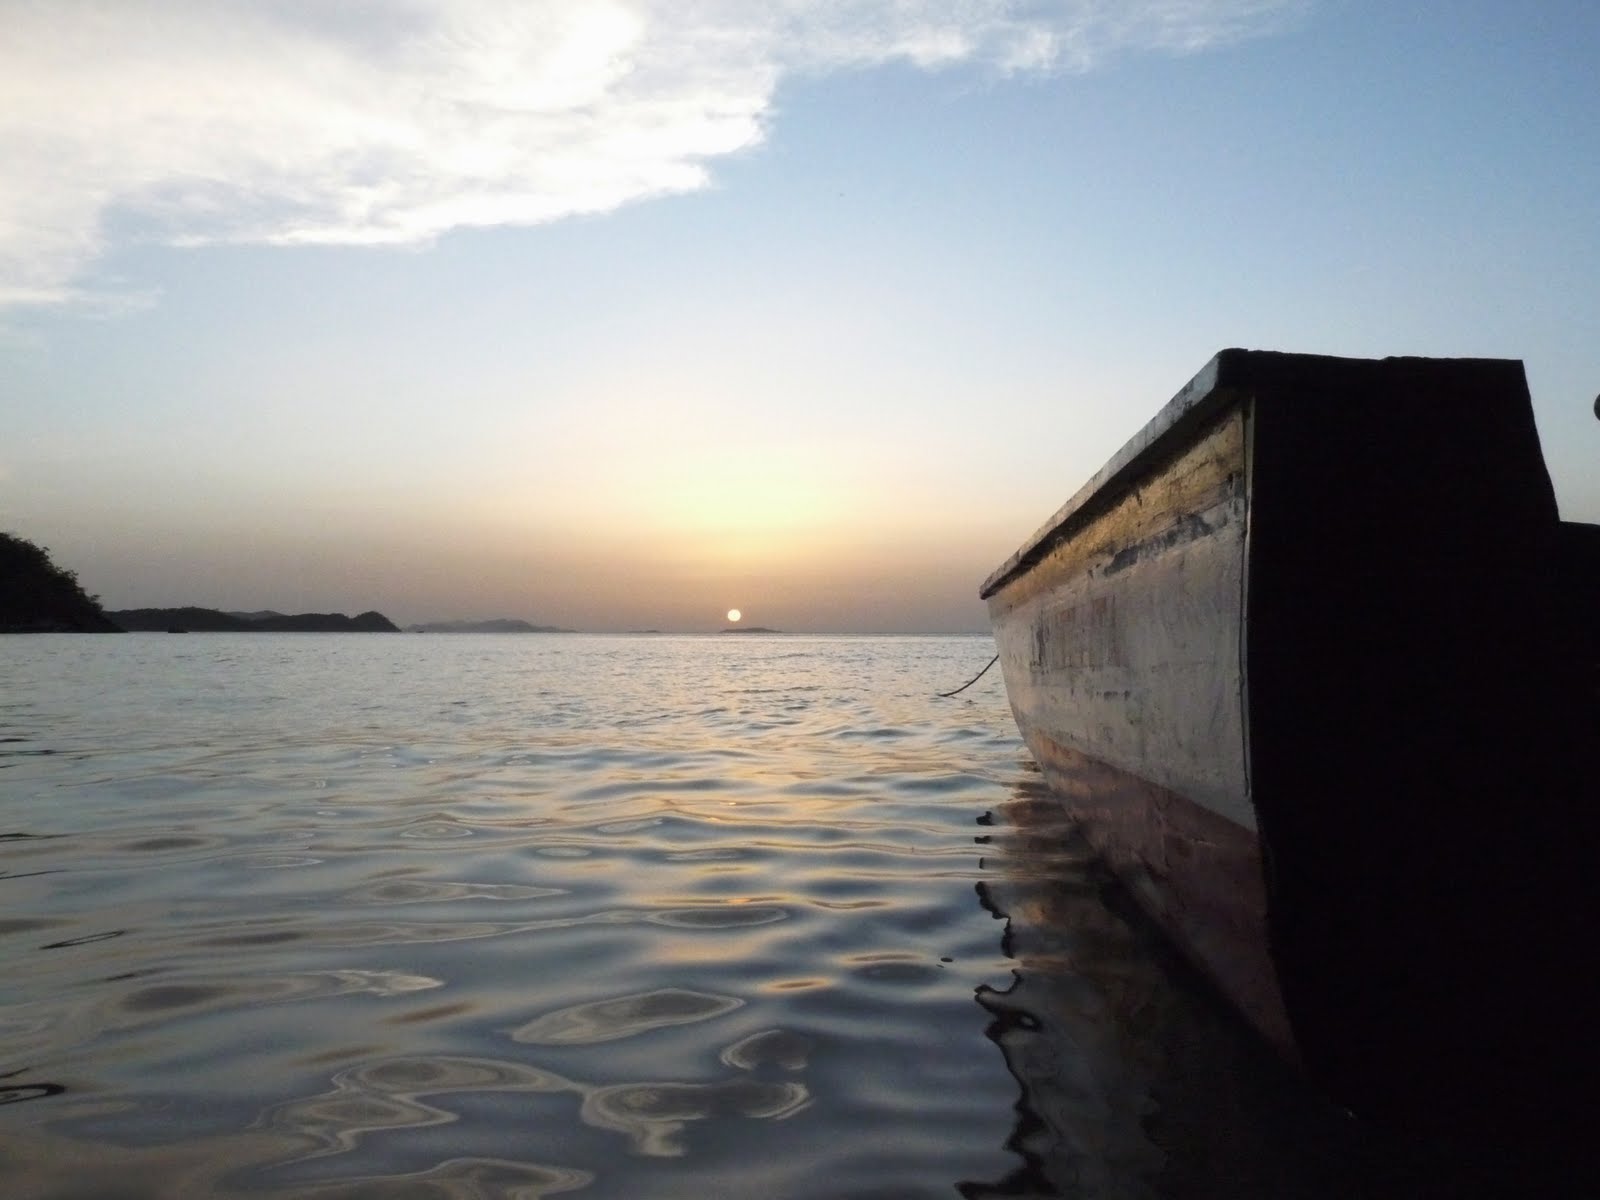 [389-15.6-Boat+at+Sunset-Venezuela-P1110613.JPG]